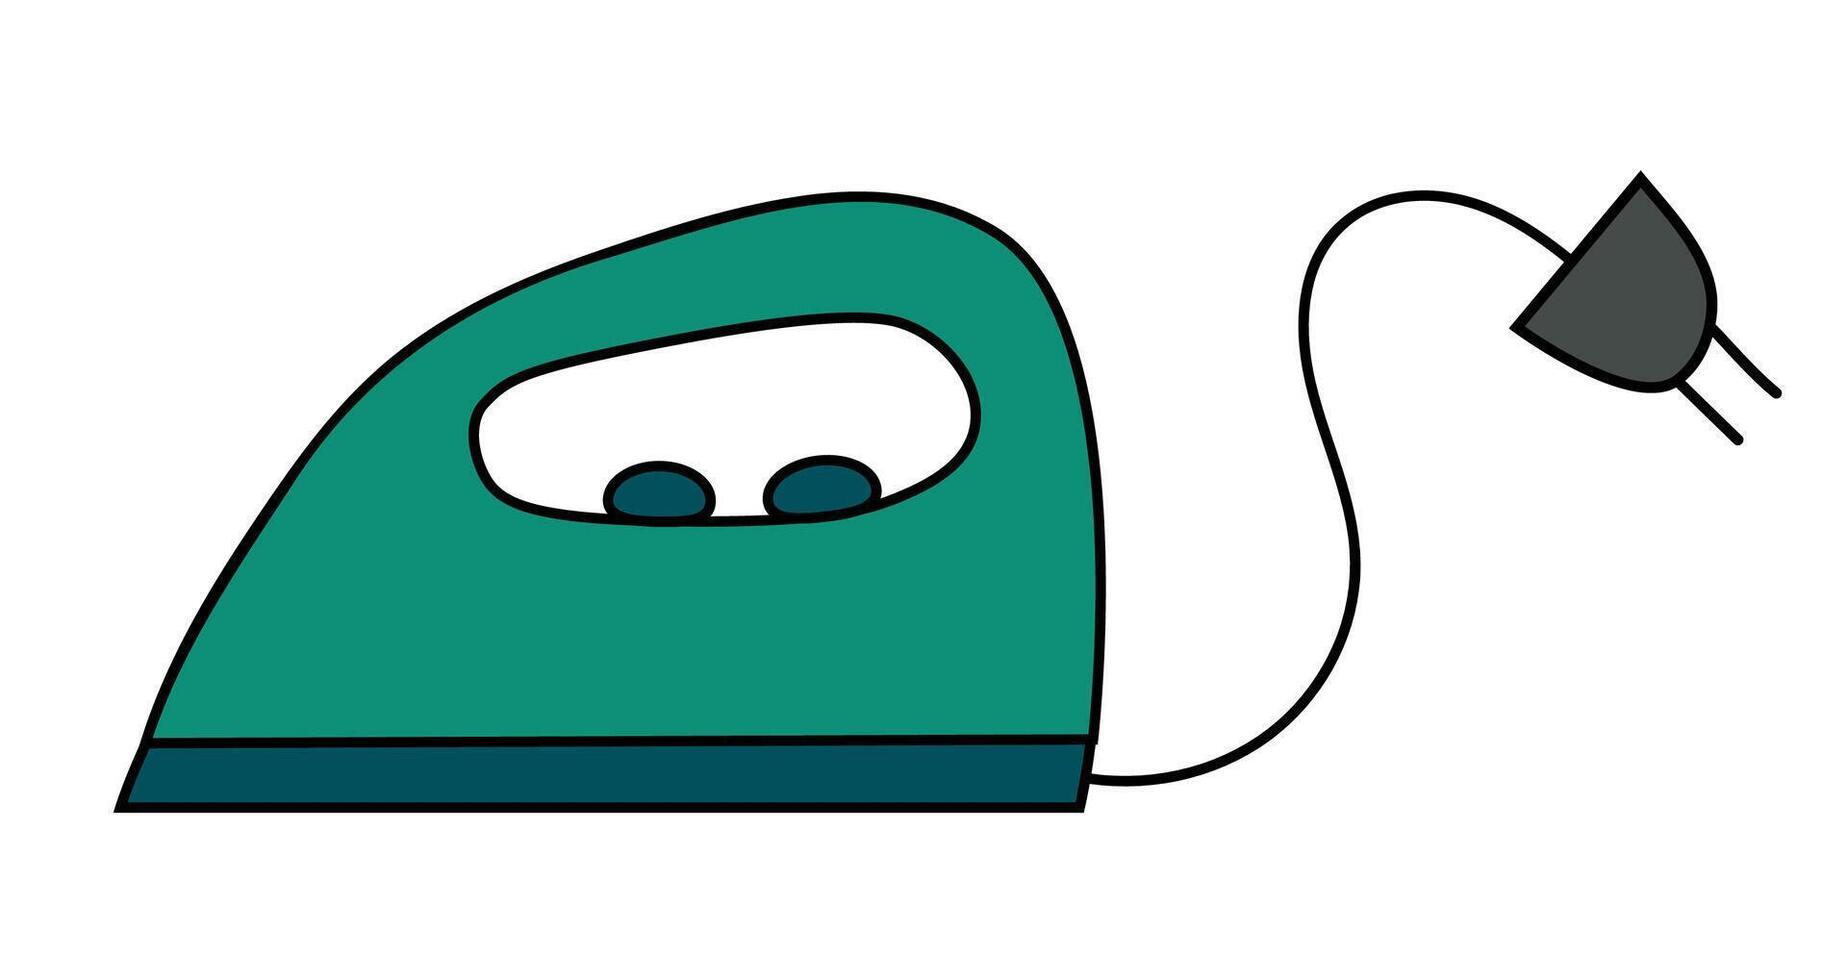 wasserij gereedschap element. ijzer huishouden apparaat. huishouding icoon, sticker, logo, embleem. gemakkelijk tekening vlak illustratie. vector